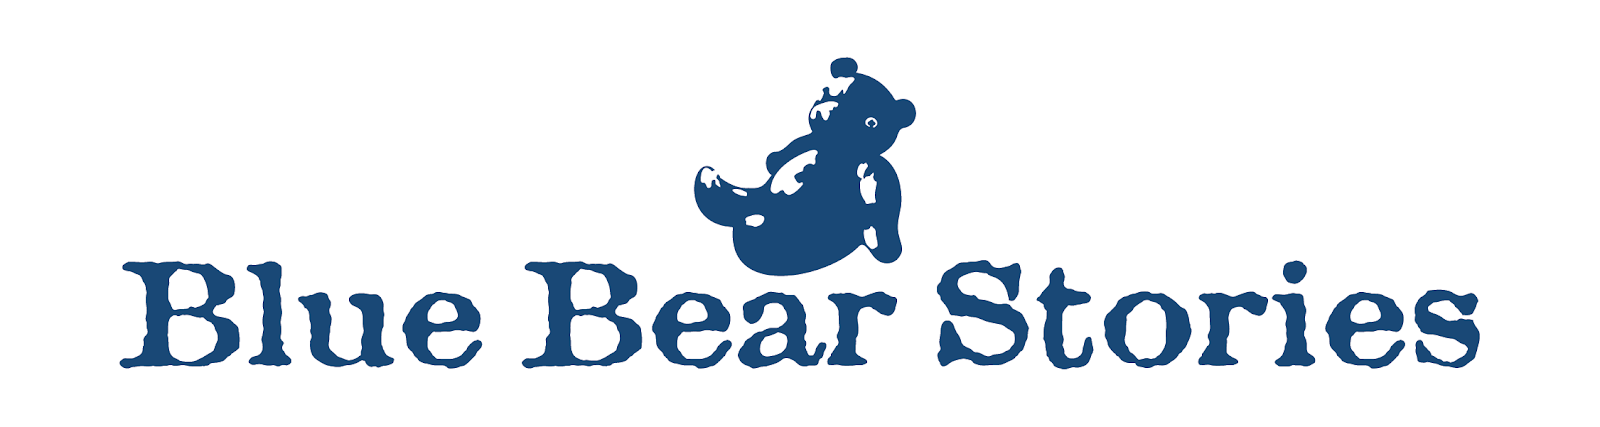 Blue Bear Stories